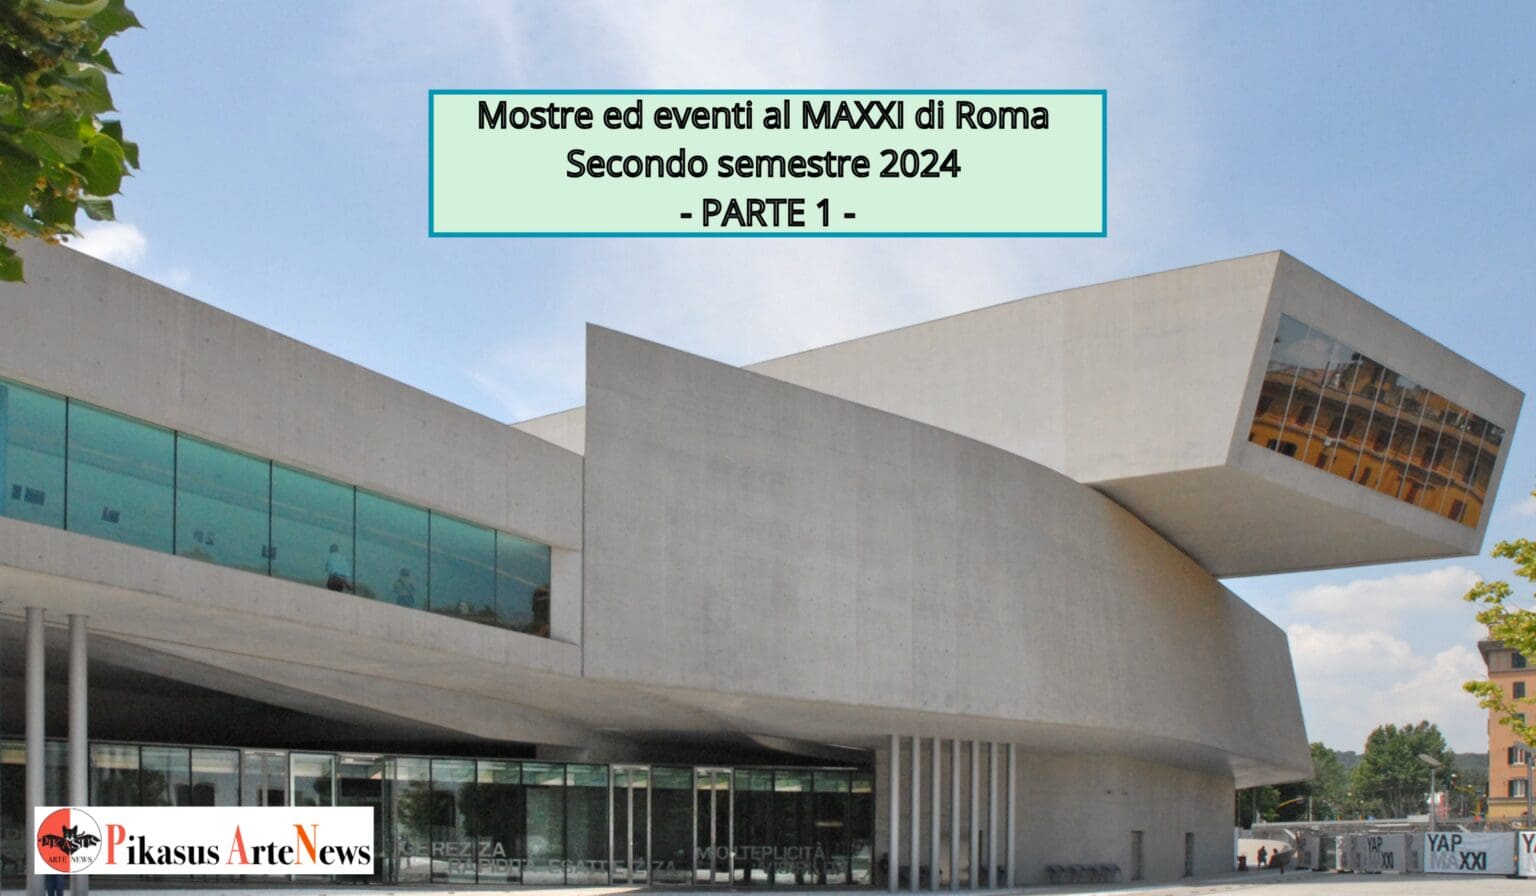 Mostre ed eventi al MAXXI di Roma nel secondo semestre 2024 – PARTE 1